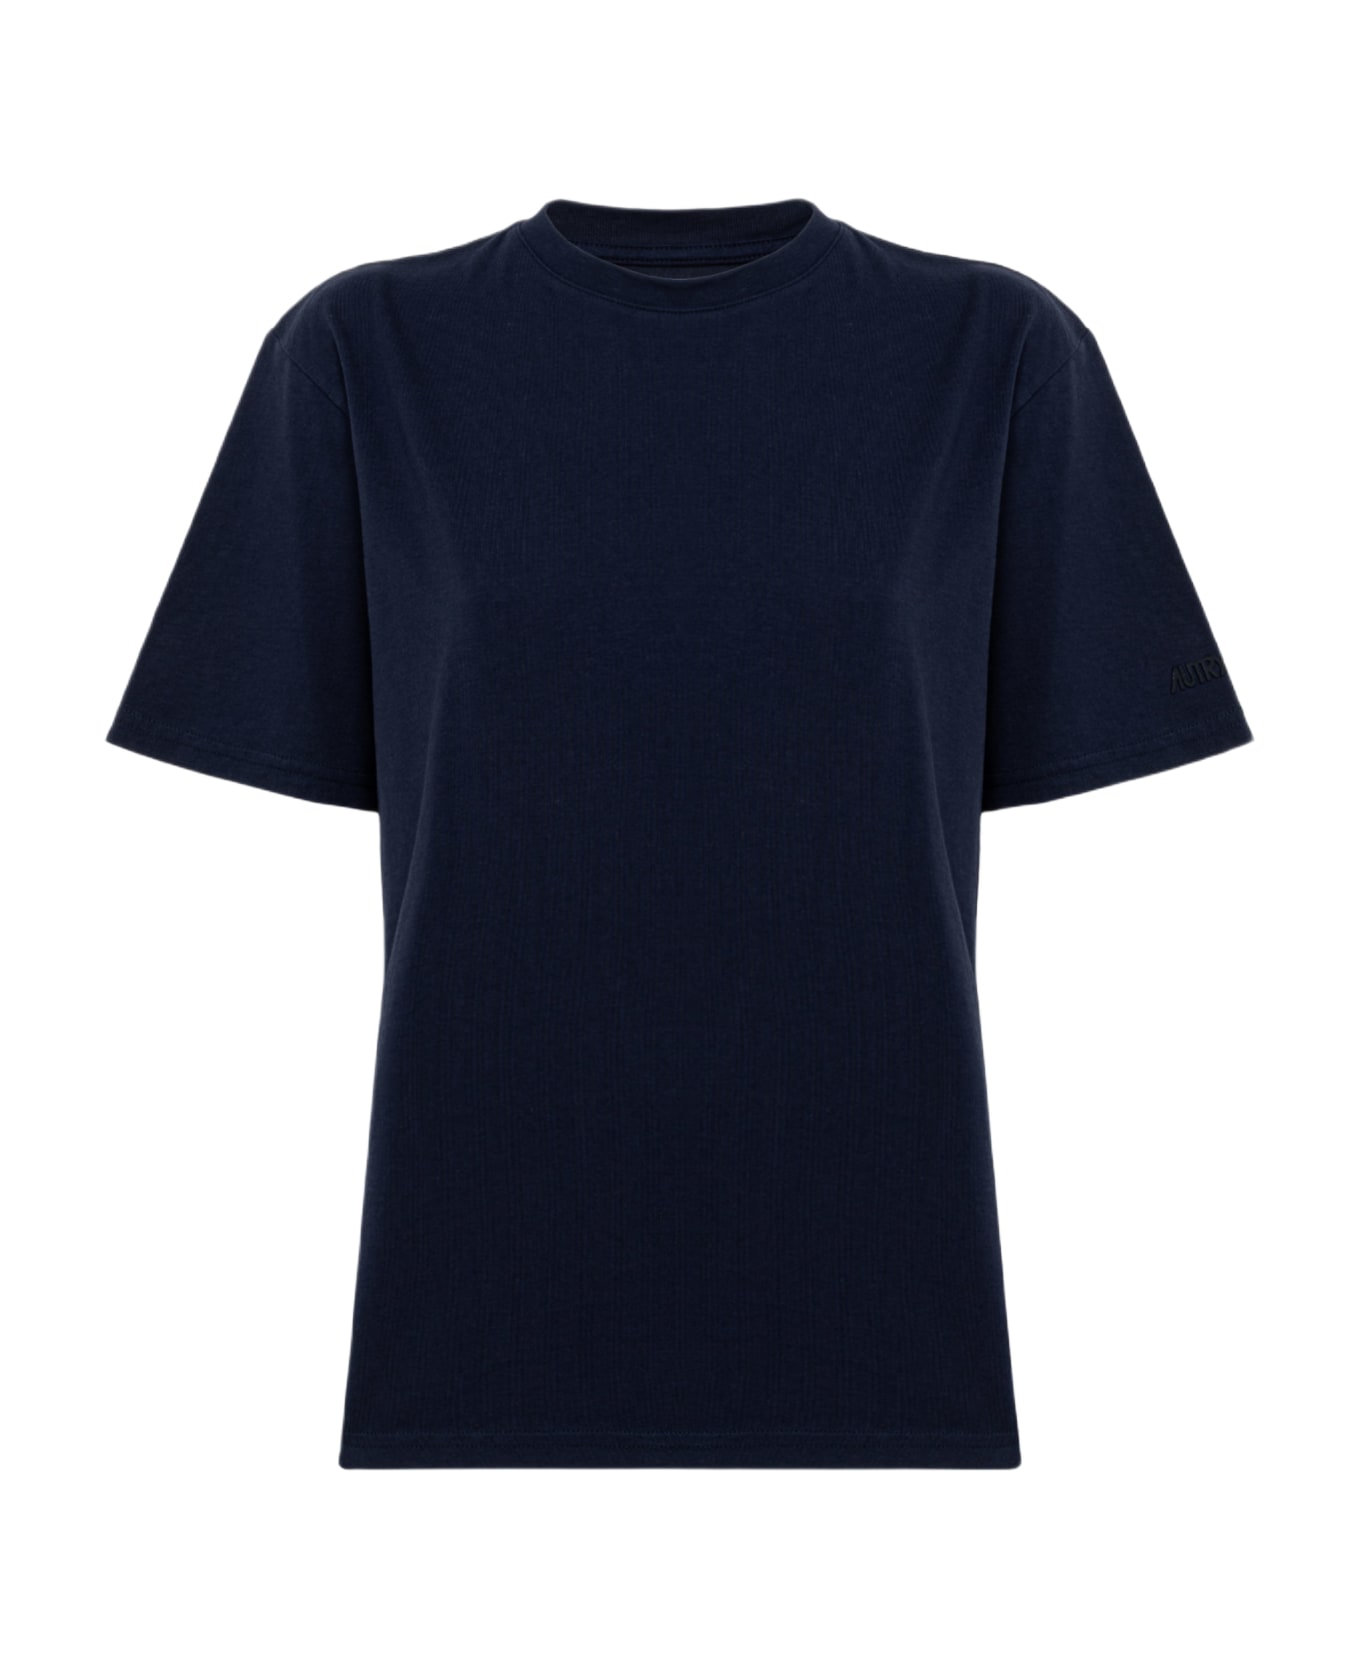 Autry T-shirt - Blue Tシャツ